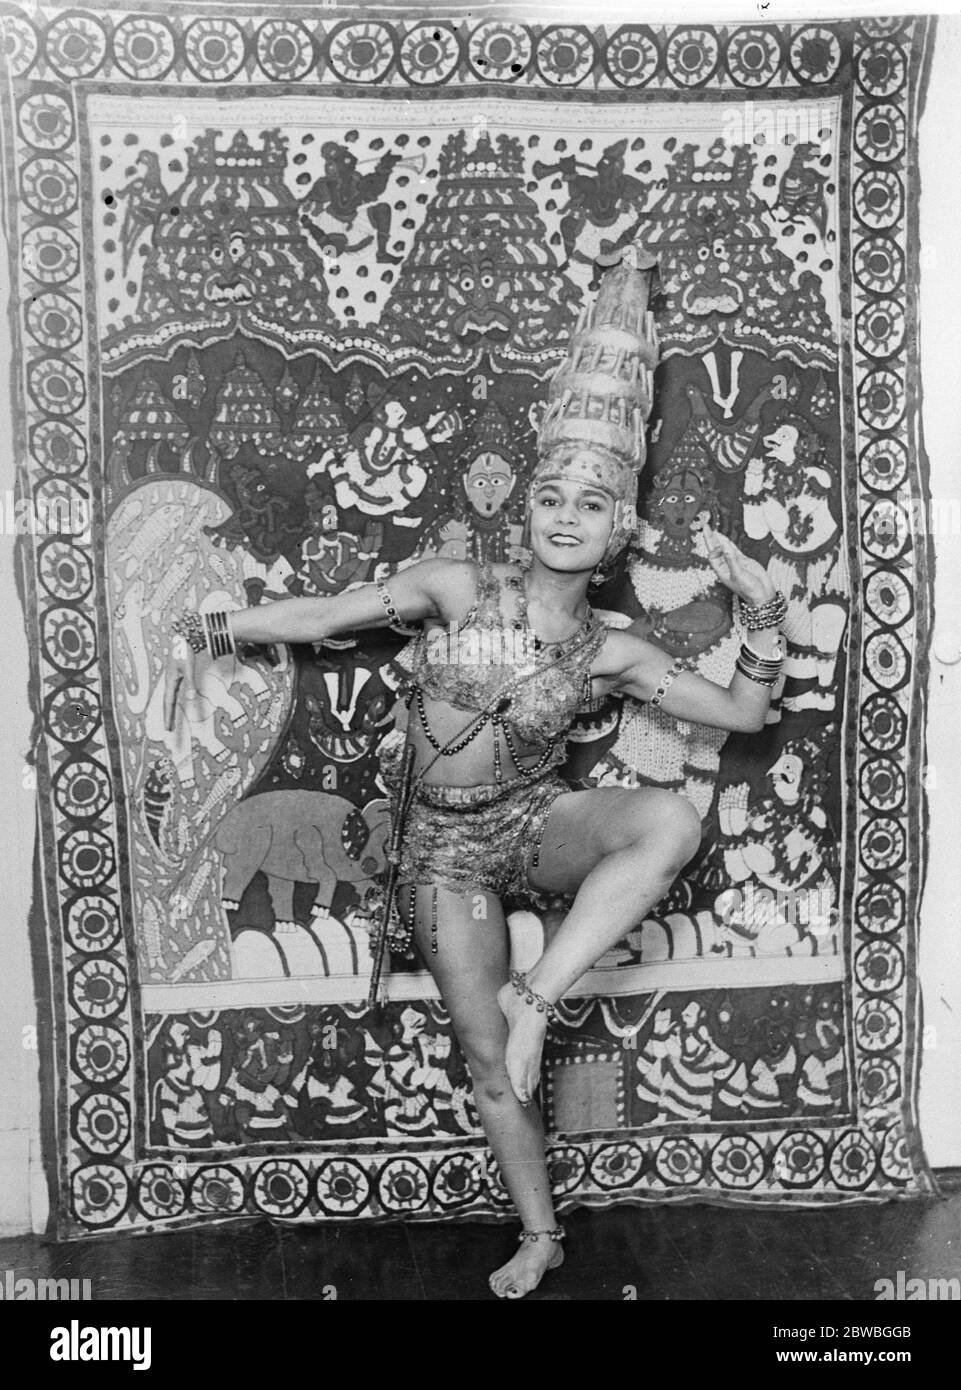 Ihre Zehen übersetzen die Religion des Orients Prinzessin Nyota Inyoka, die halb Hindu und halb Ägypter ist, wird in ihrem Studio in New York Rendering "der Tanz von Krishna" gehädigt. Prinzessin Inyoka hat eine lange Studie über die Kunst und die Religion des Orients, wie in den Tanz 17 märz 1924 ausgedrückt Stockfoto